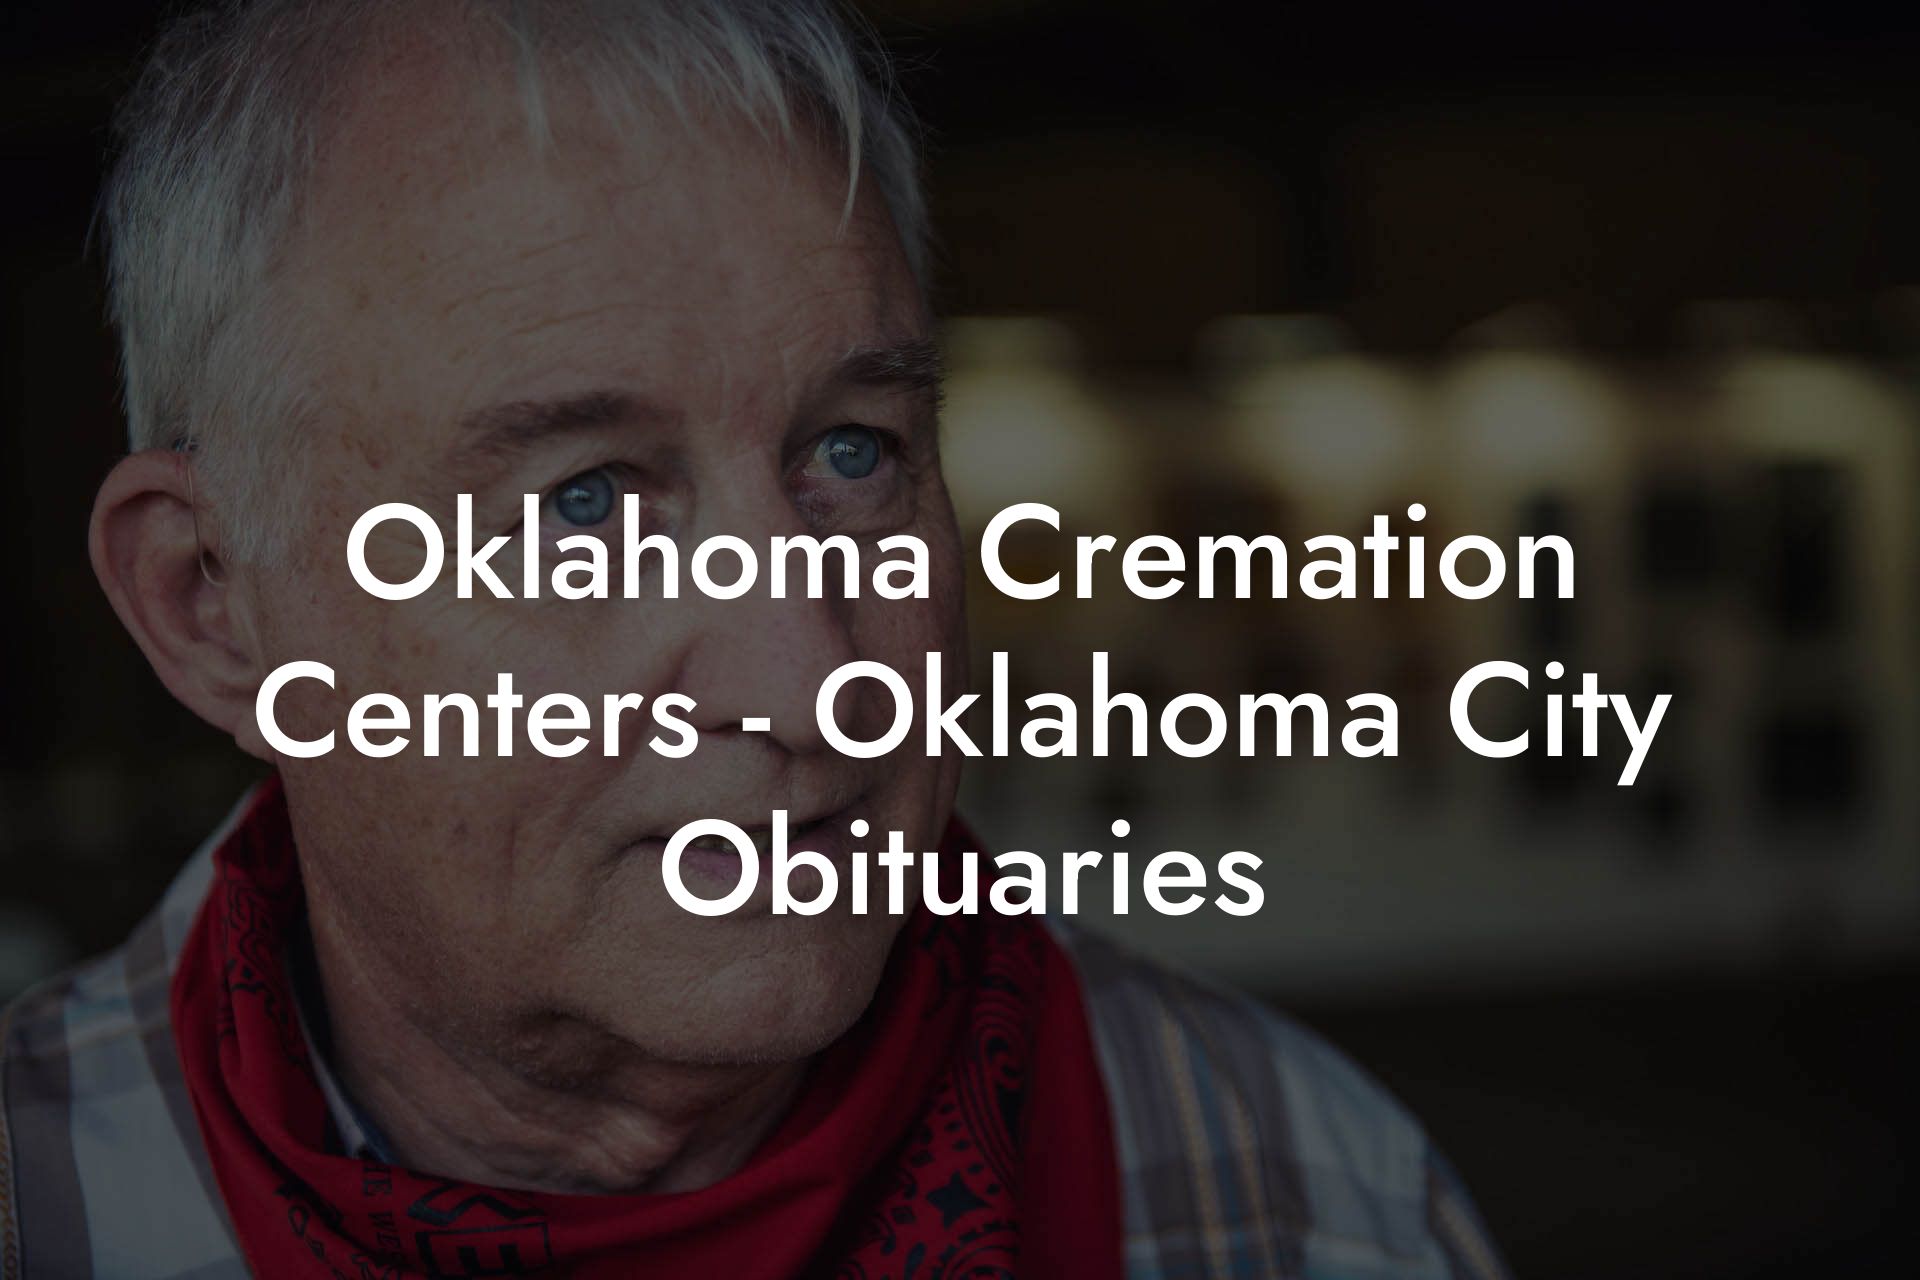 Oklahoma Cremation Centers - Oklahoma City Obituaries